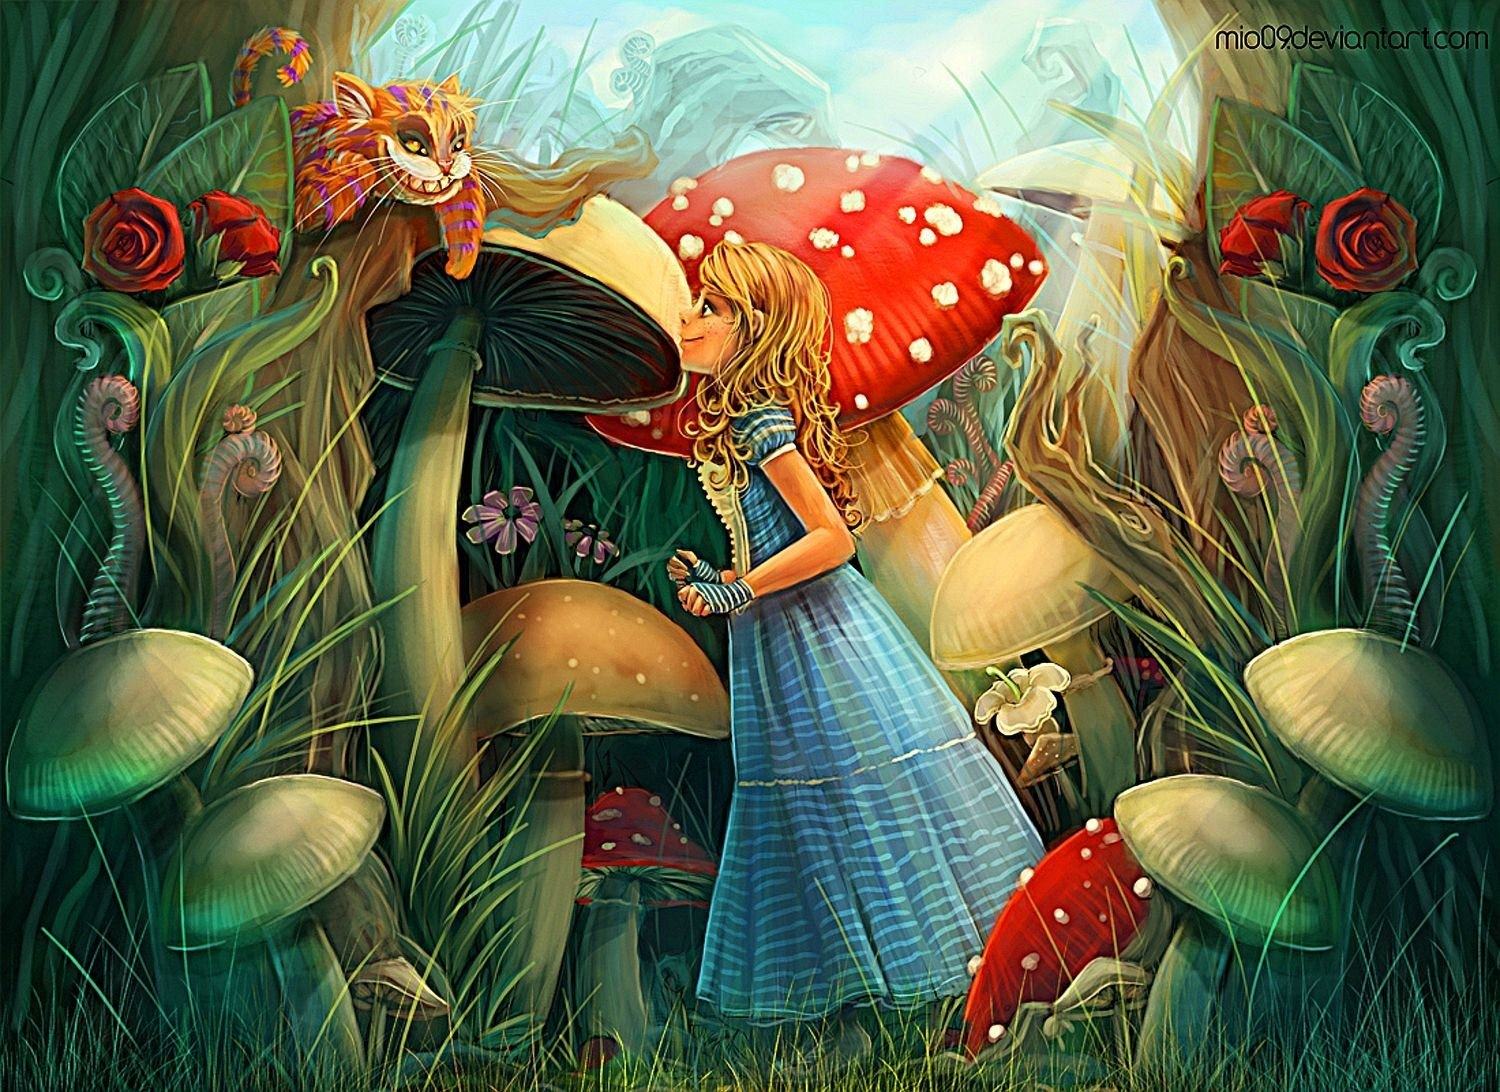 Алиса в стране чудес 1 сказка. Алиса в стране чудес. Алиса в стране чудес Алиса. Иллюстрация к сказке Алиса в стране чудес. Иллюстрация из сказки Алиса в стране чудес.